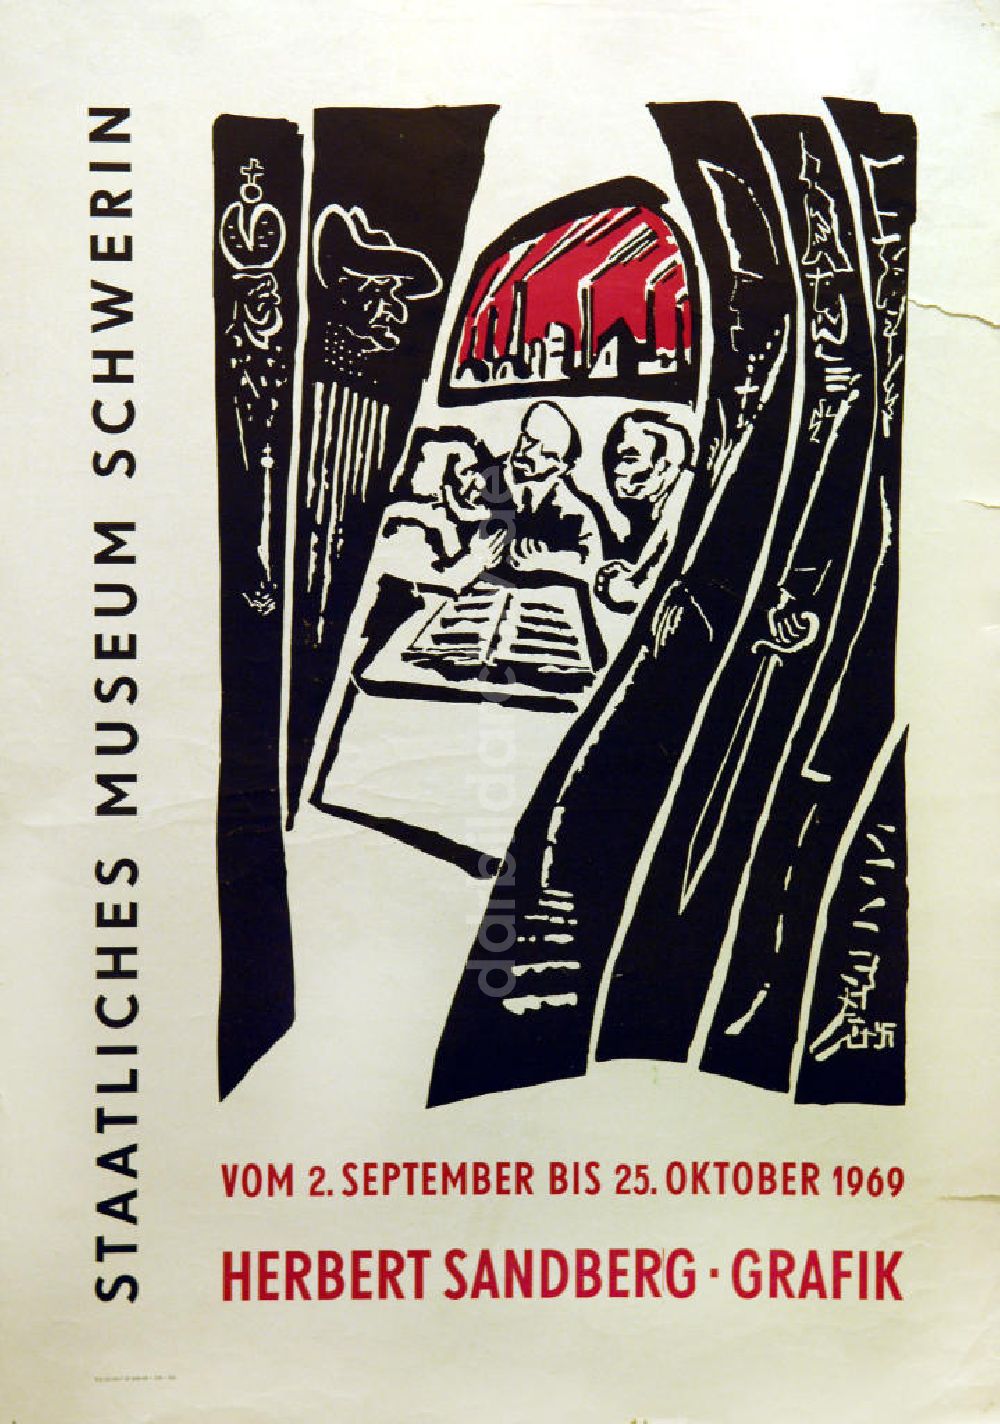 DDR-Fotoarchiv: Berlin - Plakat von der Ausstellung Herbert Sandberg Grafik aus dem Jahr 1969